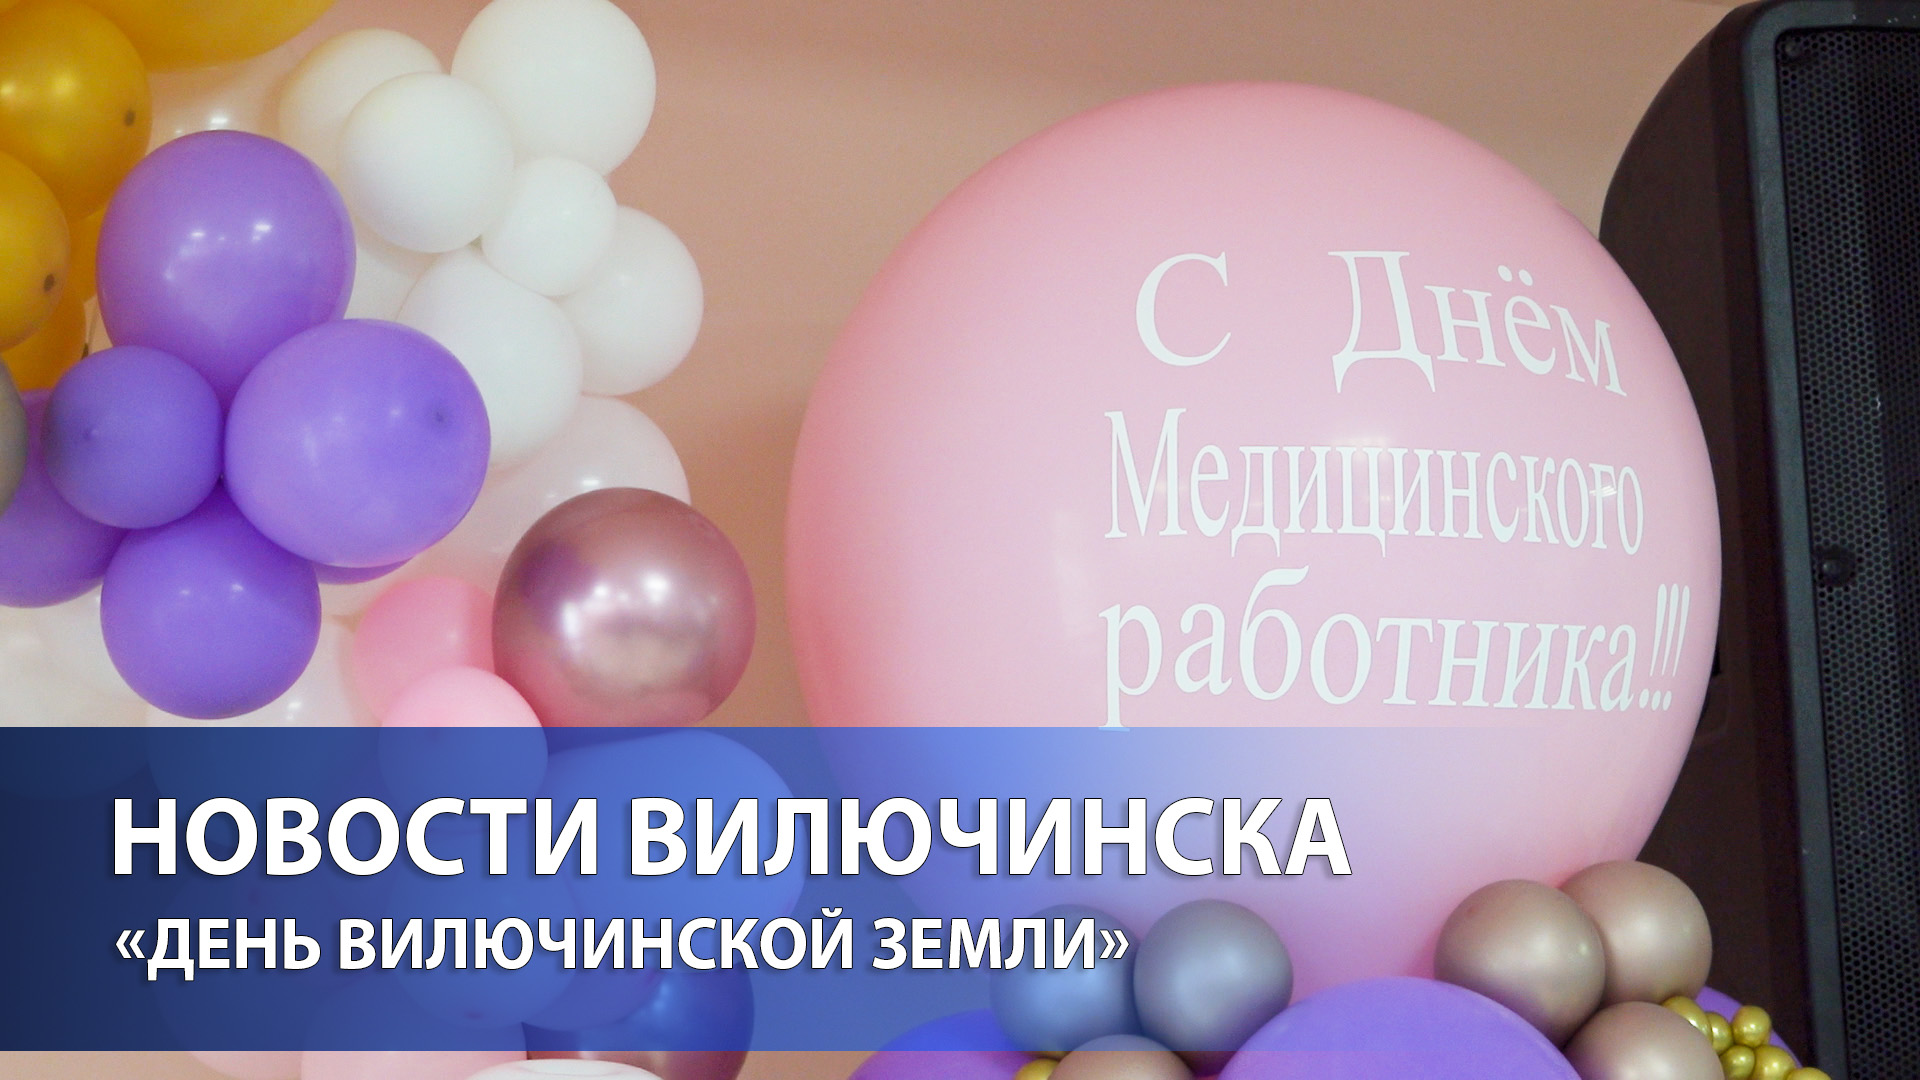 В Вилючинске прошло торжественное награждение медиков в связи с их профессиональным праздником